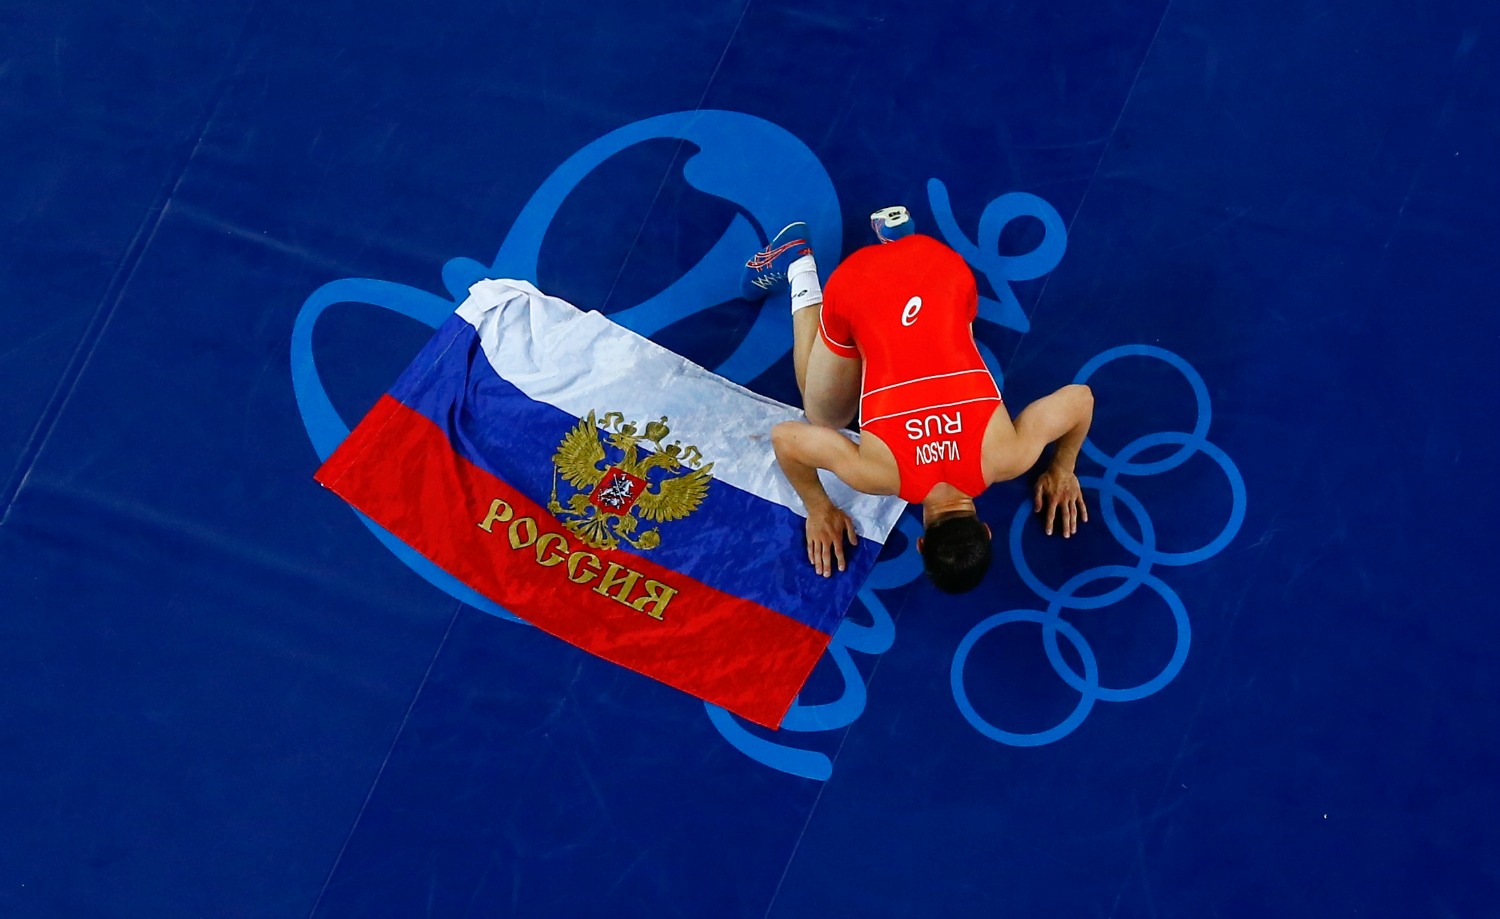 Las autoridades rusas admiten una "conspiración de dopaje" en el deporte de élite